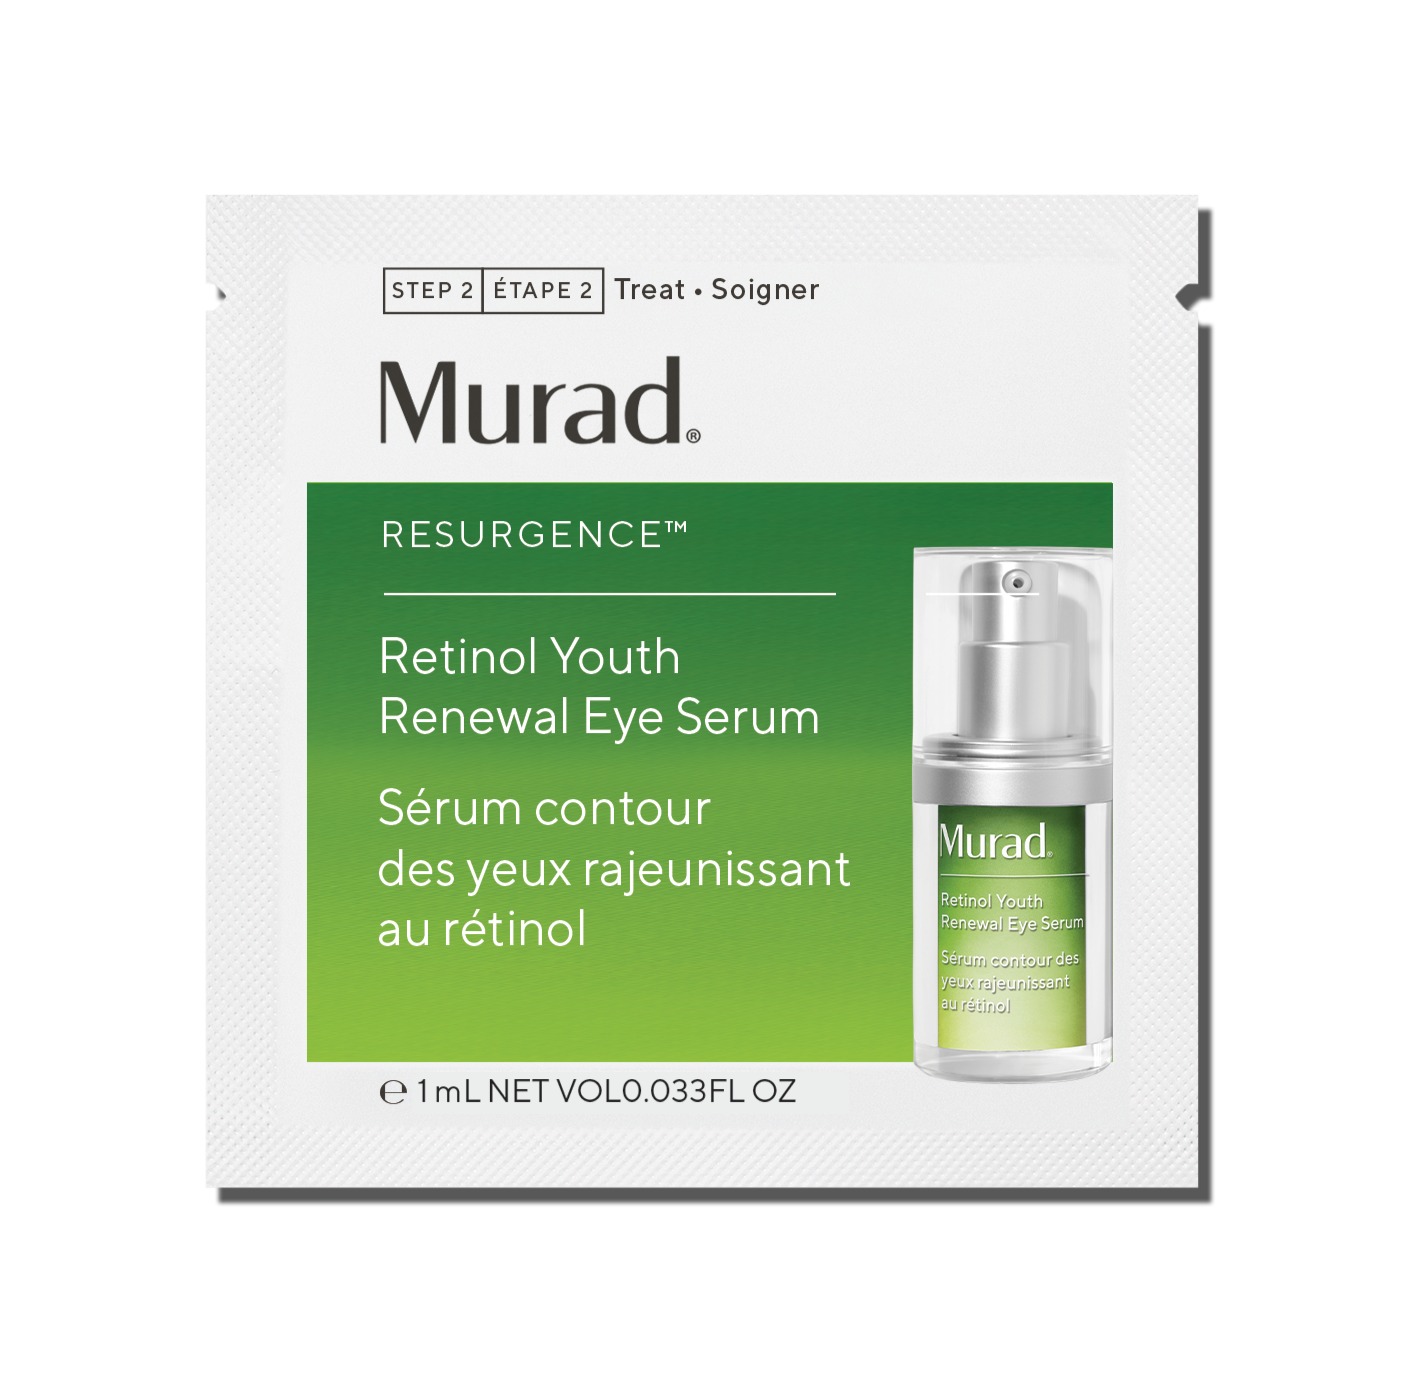 Retinol Youth Renewal Eye Serum